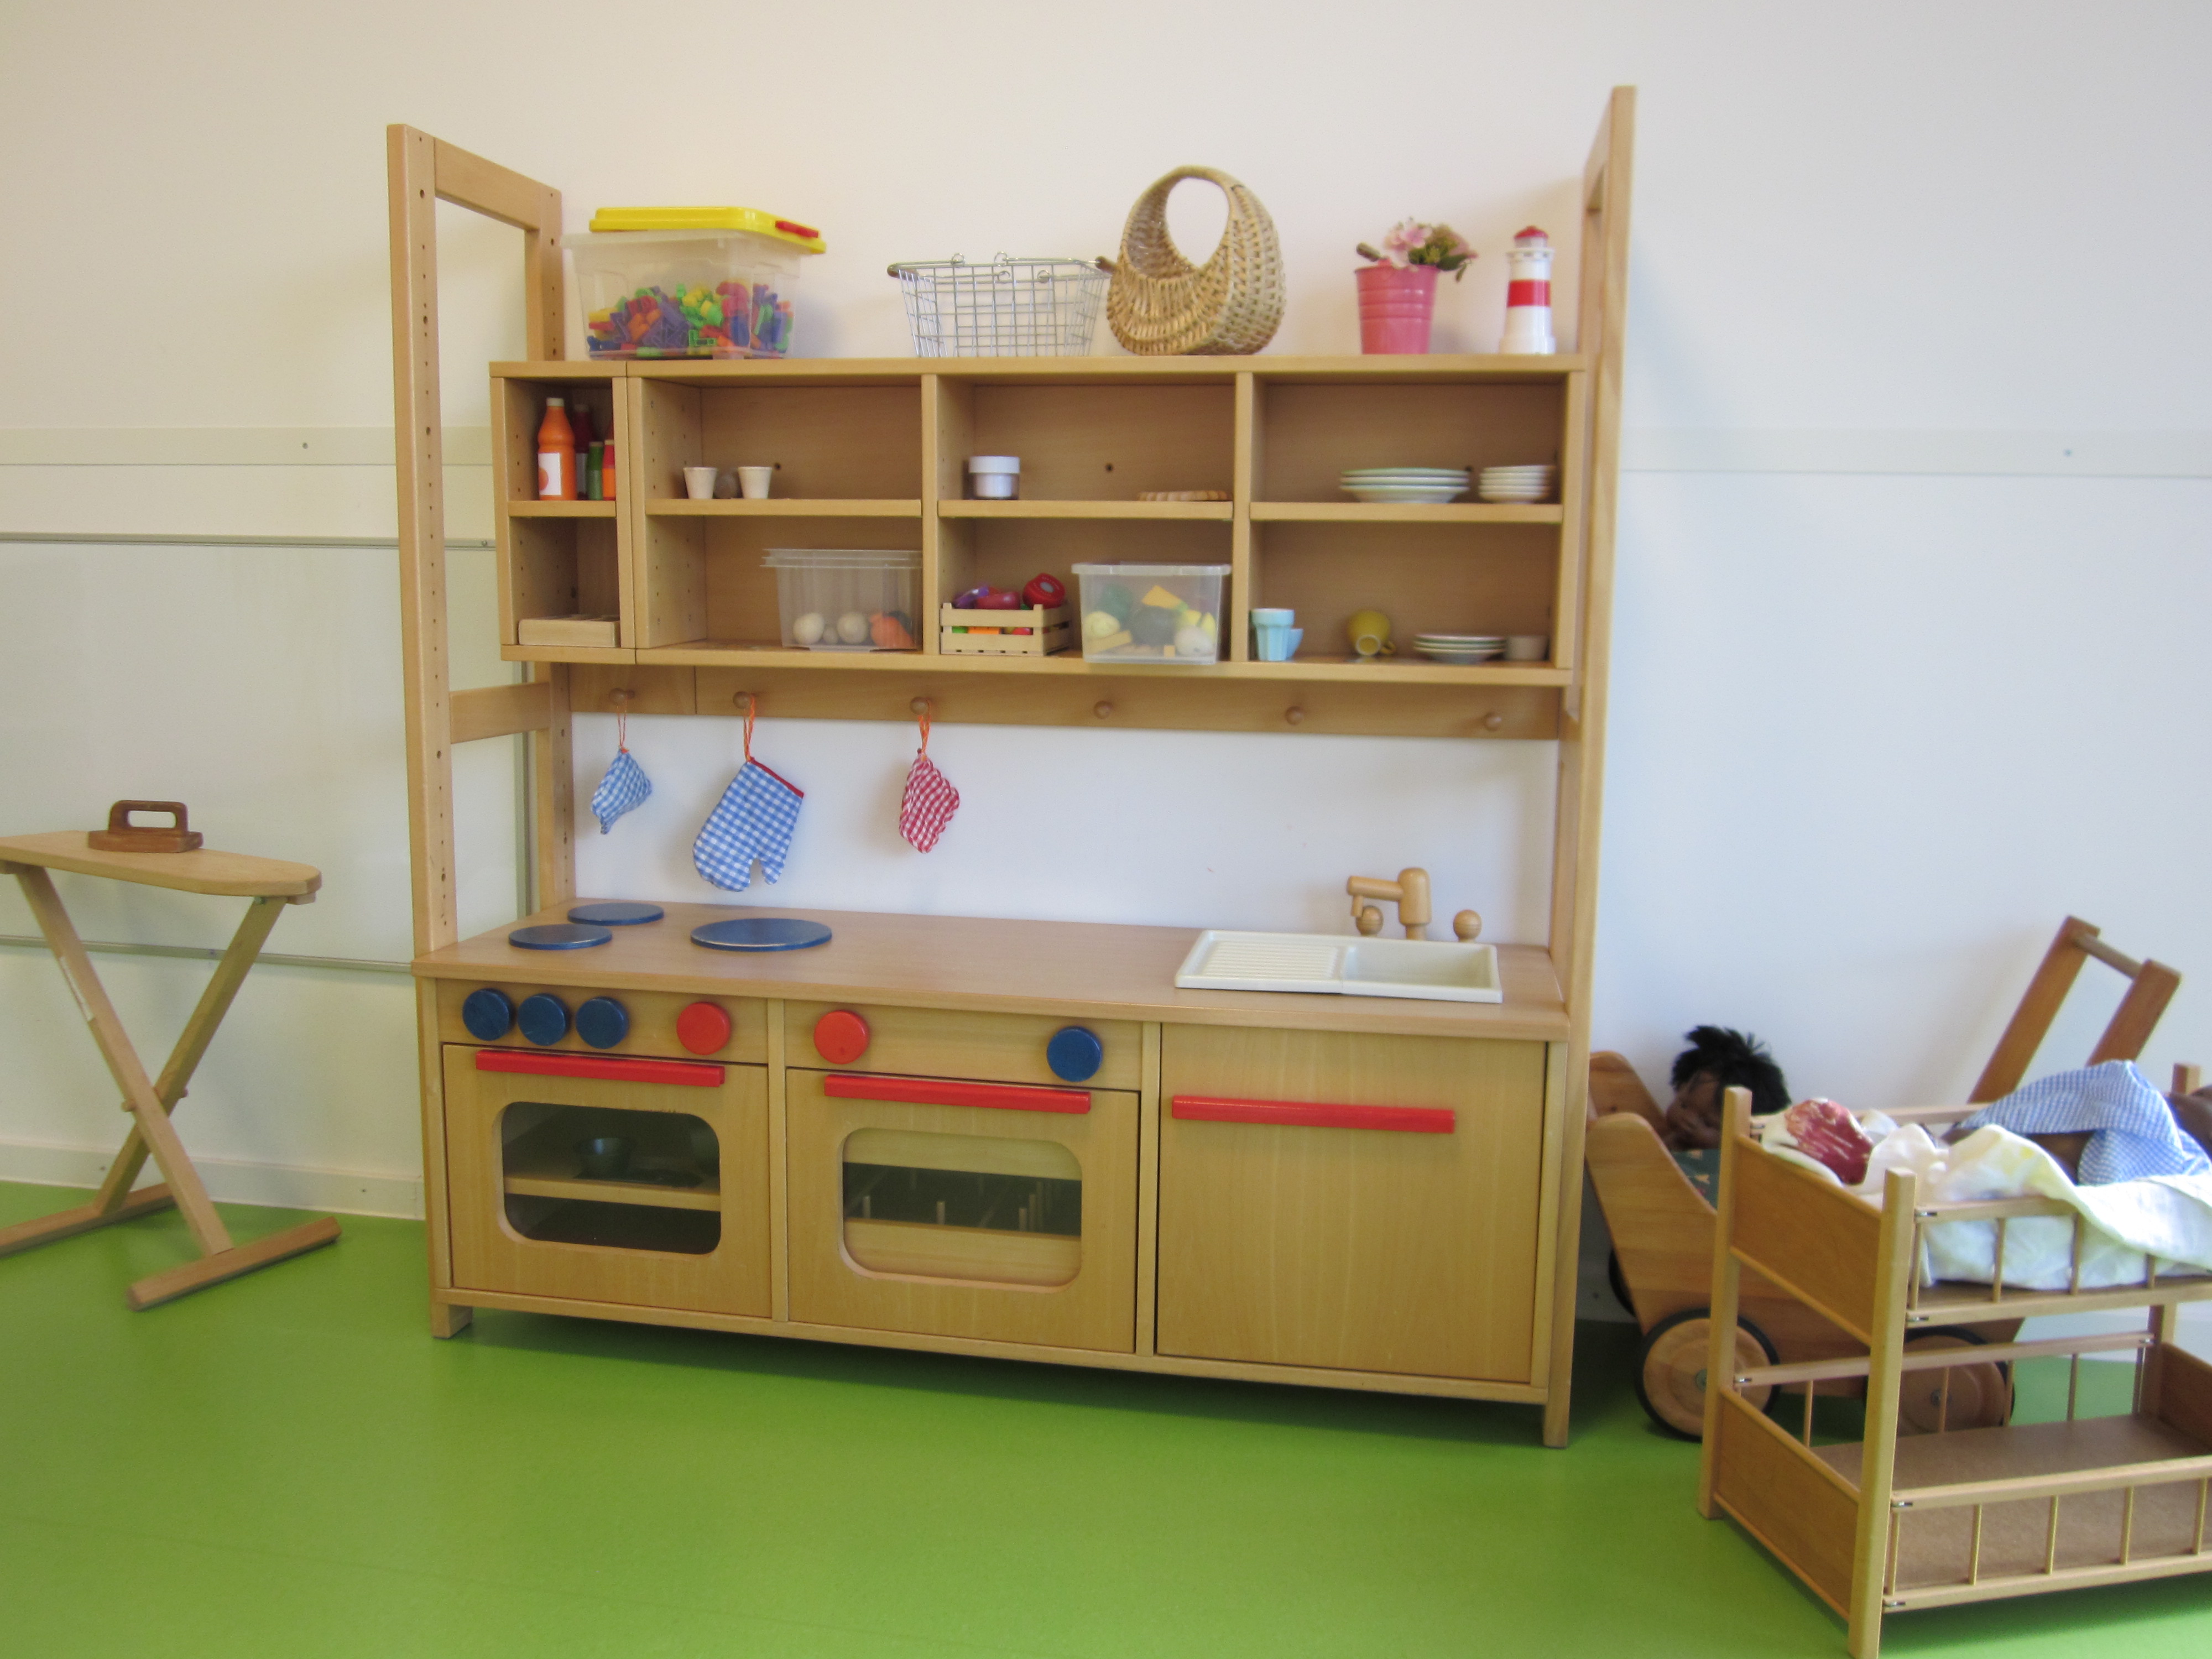 Auf dem Bild ist eine große Kinderküche aus Holz zu sehen. Links daneben steht ein Bügelbrett aus Holz, rechts ein zweistöckiges Puppenbett und ein Puppenwagen.